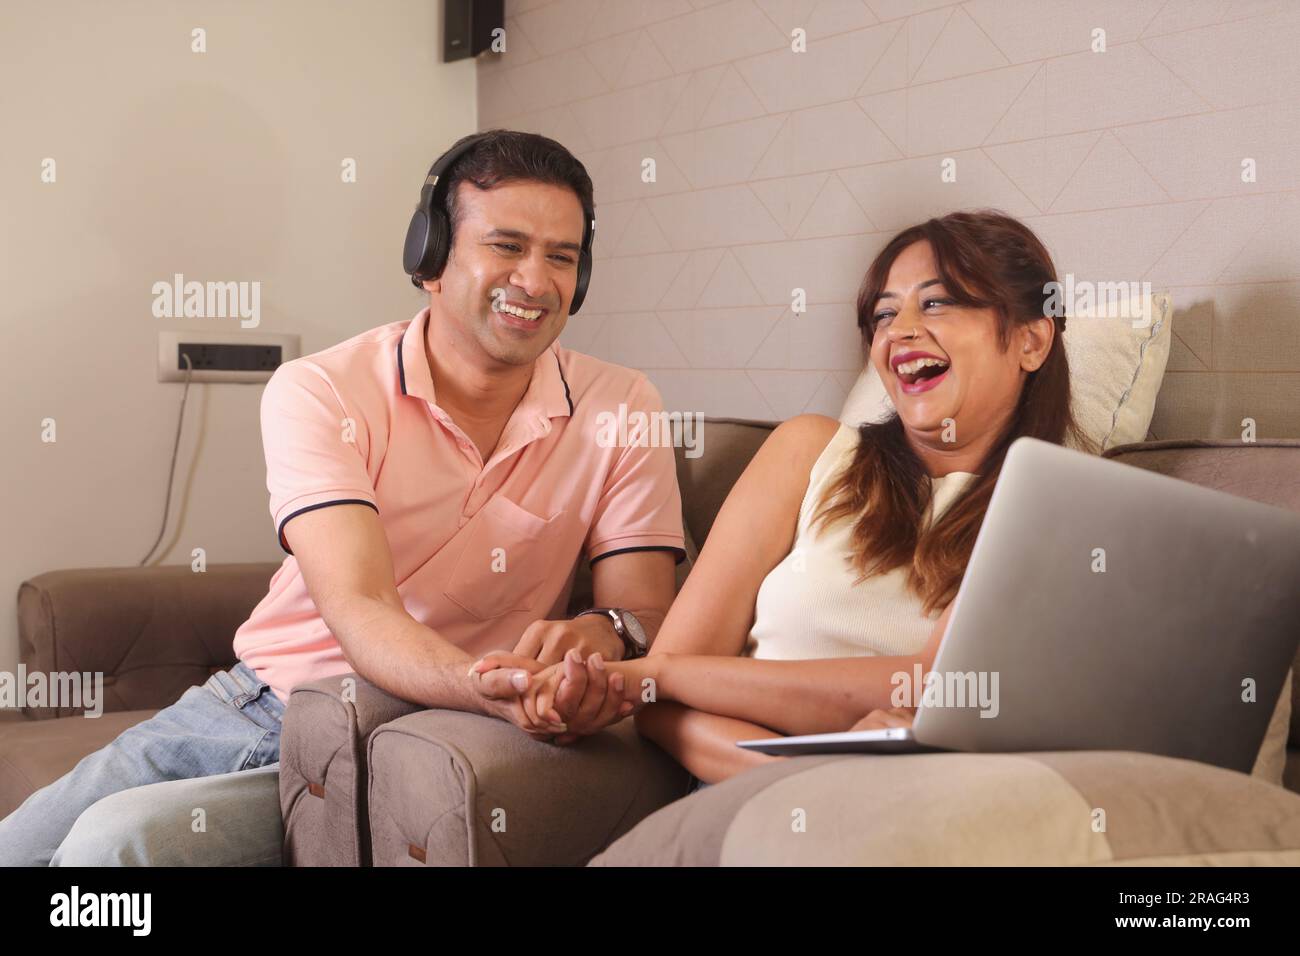 Indiano coppia felice mangiare insalata e dieta sana seduti su un divano tenendo un portatile navigare online. Ascolto di musica. Ascolto di canzoni. Foto Stock